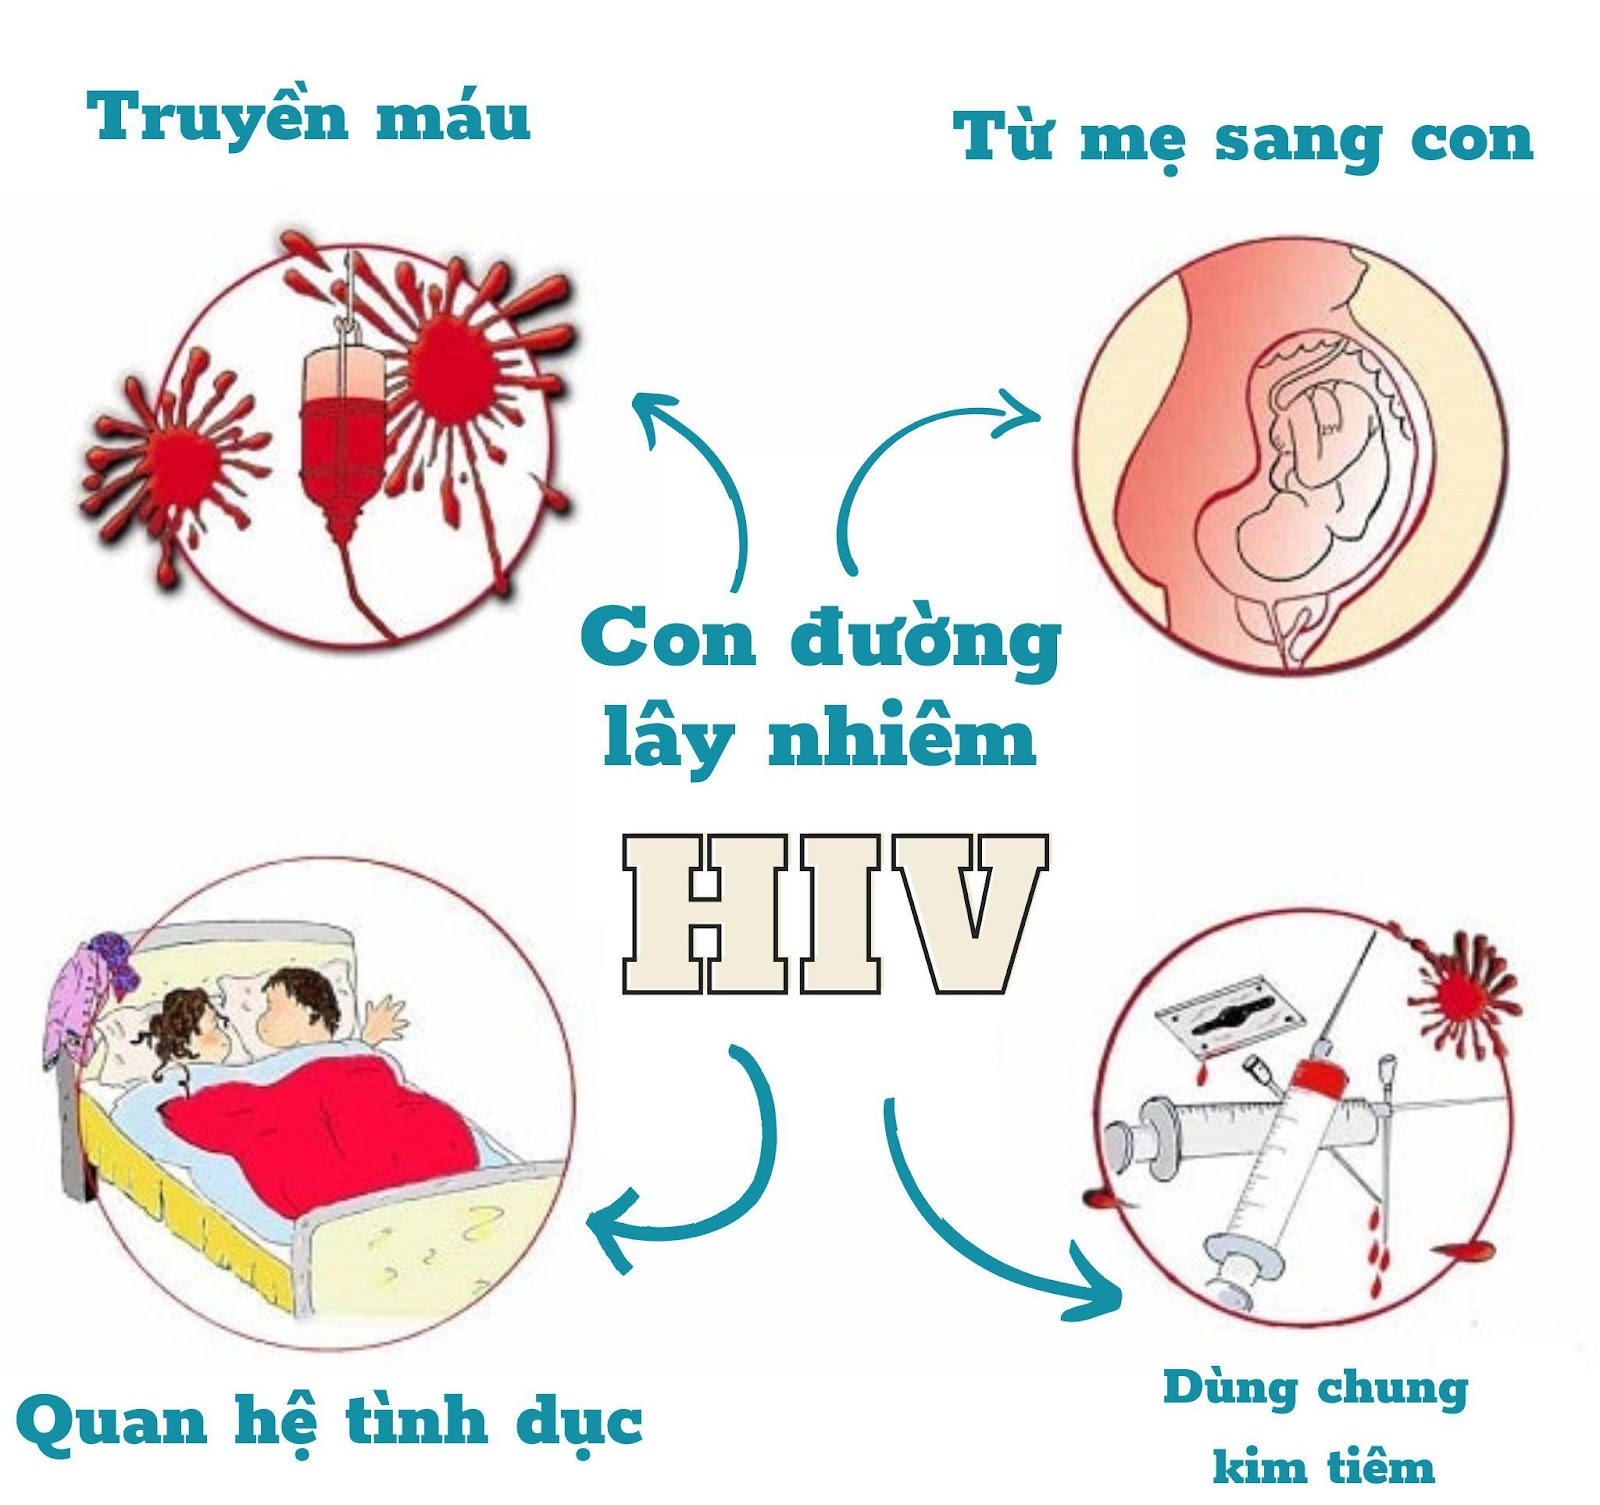 8 cách đơn giản để bảo vệ bản thân, phòng ngừa lây nhiễm HIV - Ảnh 2.